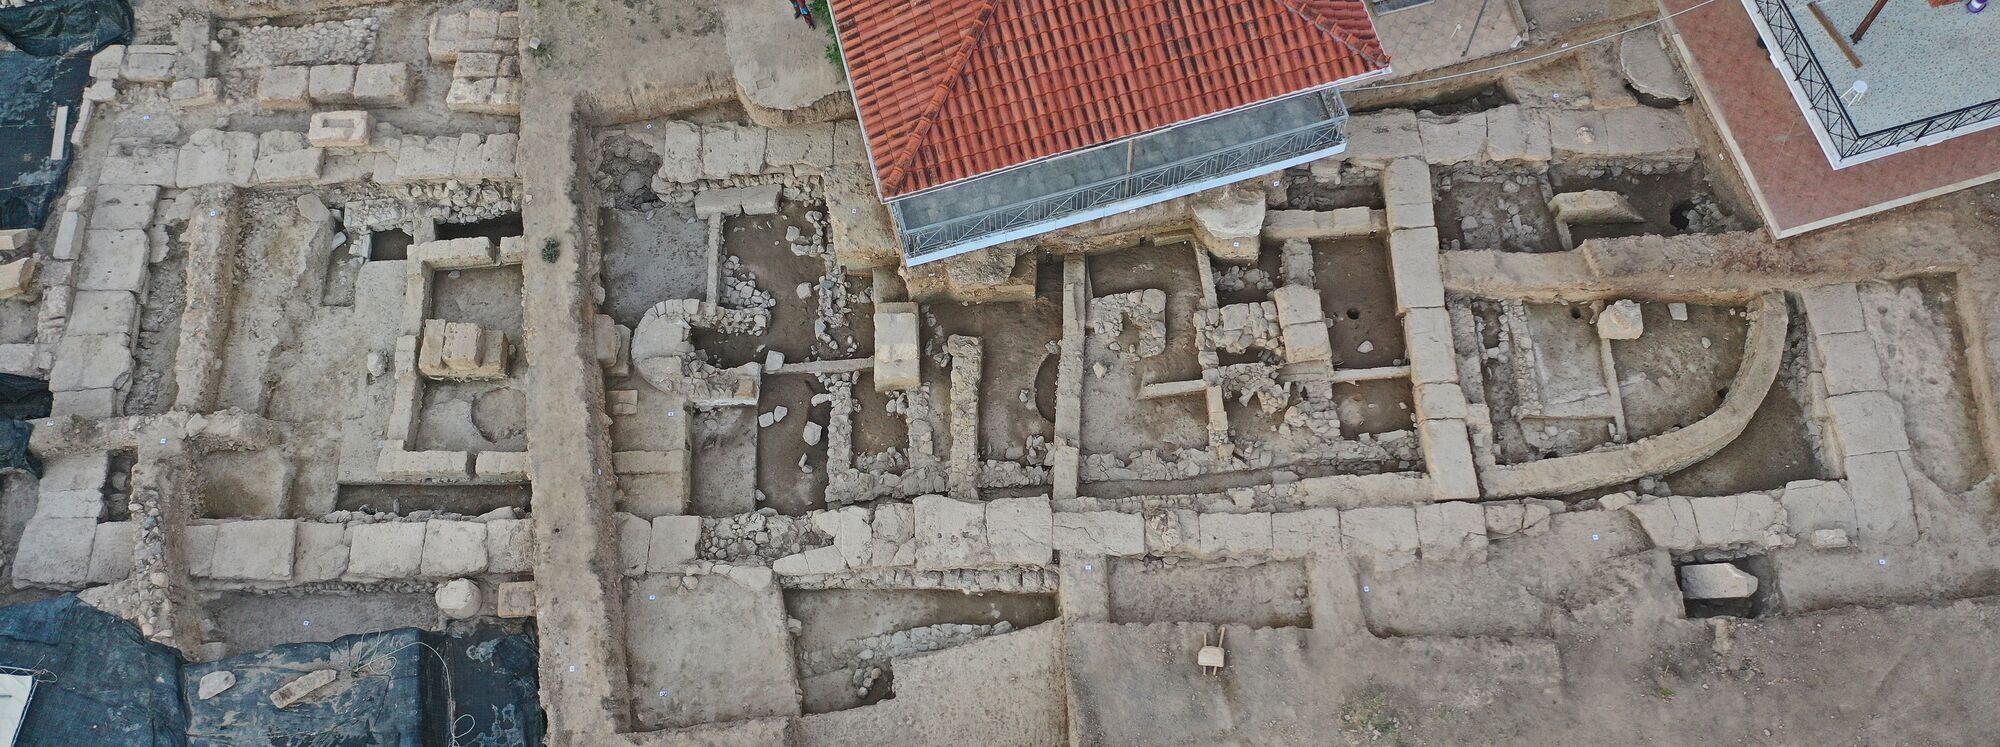 В Греции археологи обнаружили 2700-летний храм, усыпанный драгоценностями (фото)